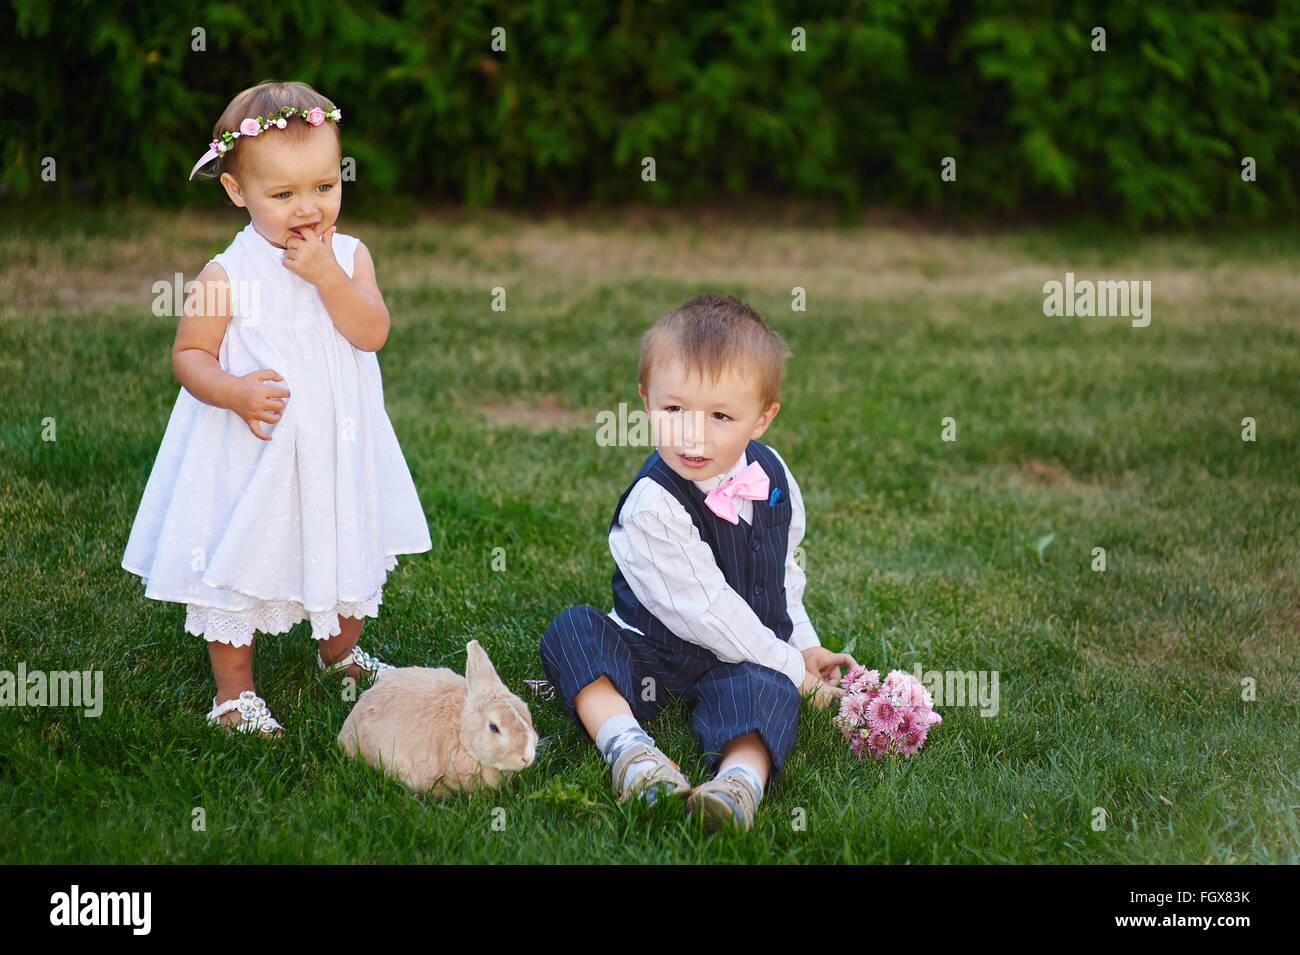 kleiner Junge mit dem Mädchen und Kaninchen spielen auf der Wiese Stockfoto